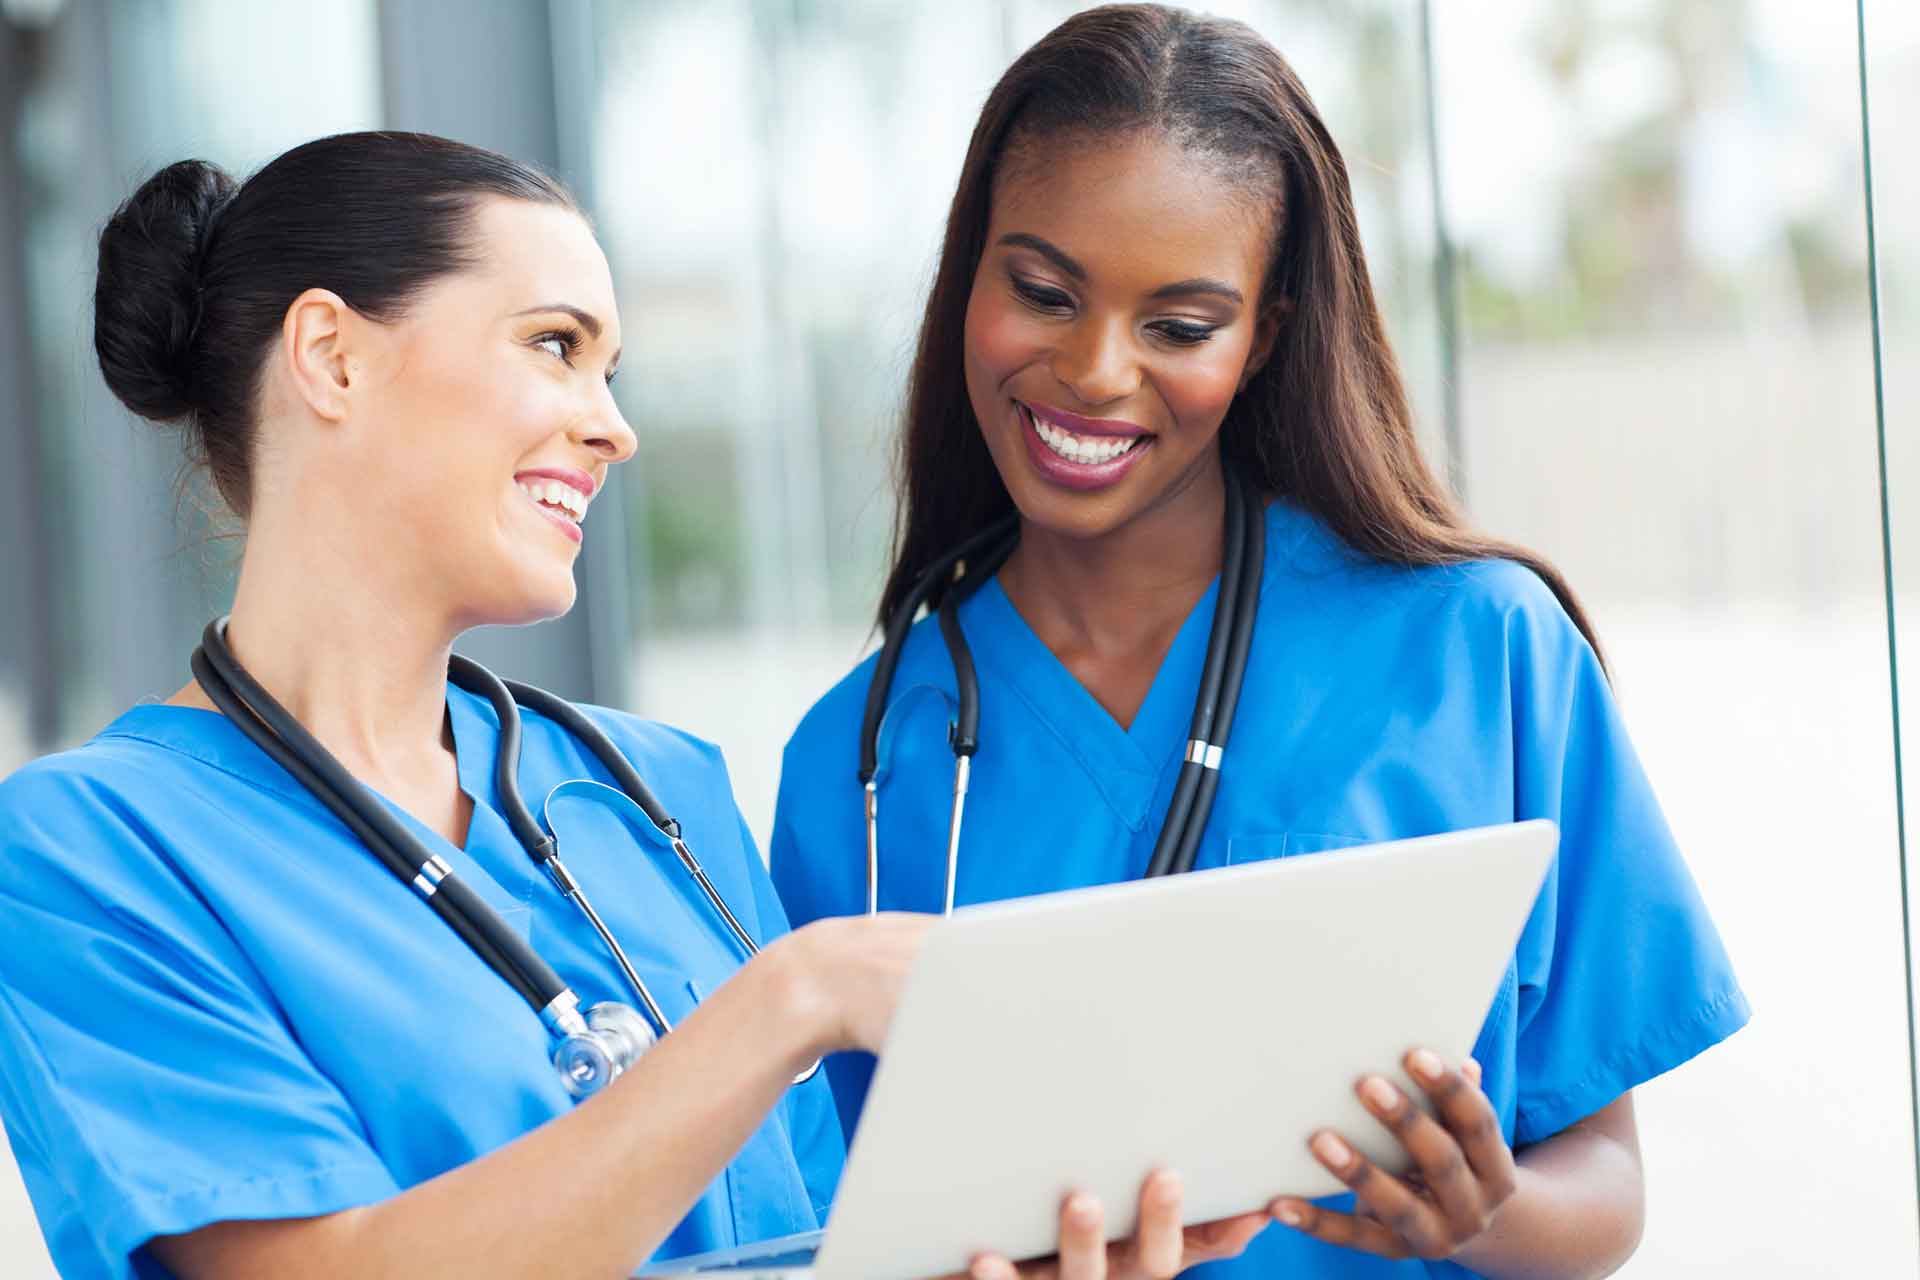 NursingCE.com: A New CEU Resource for Nurses